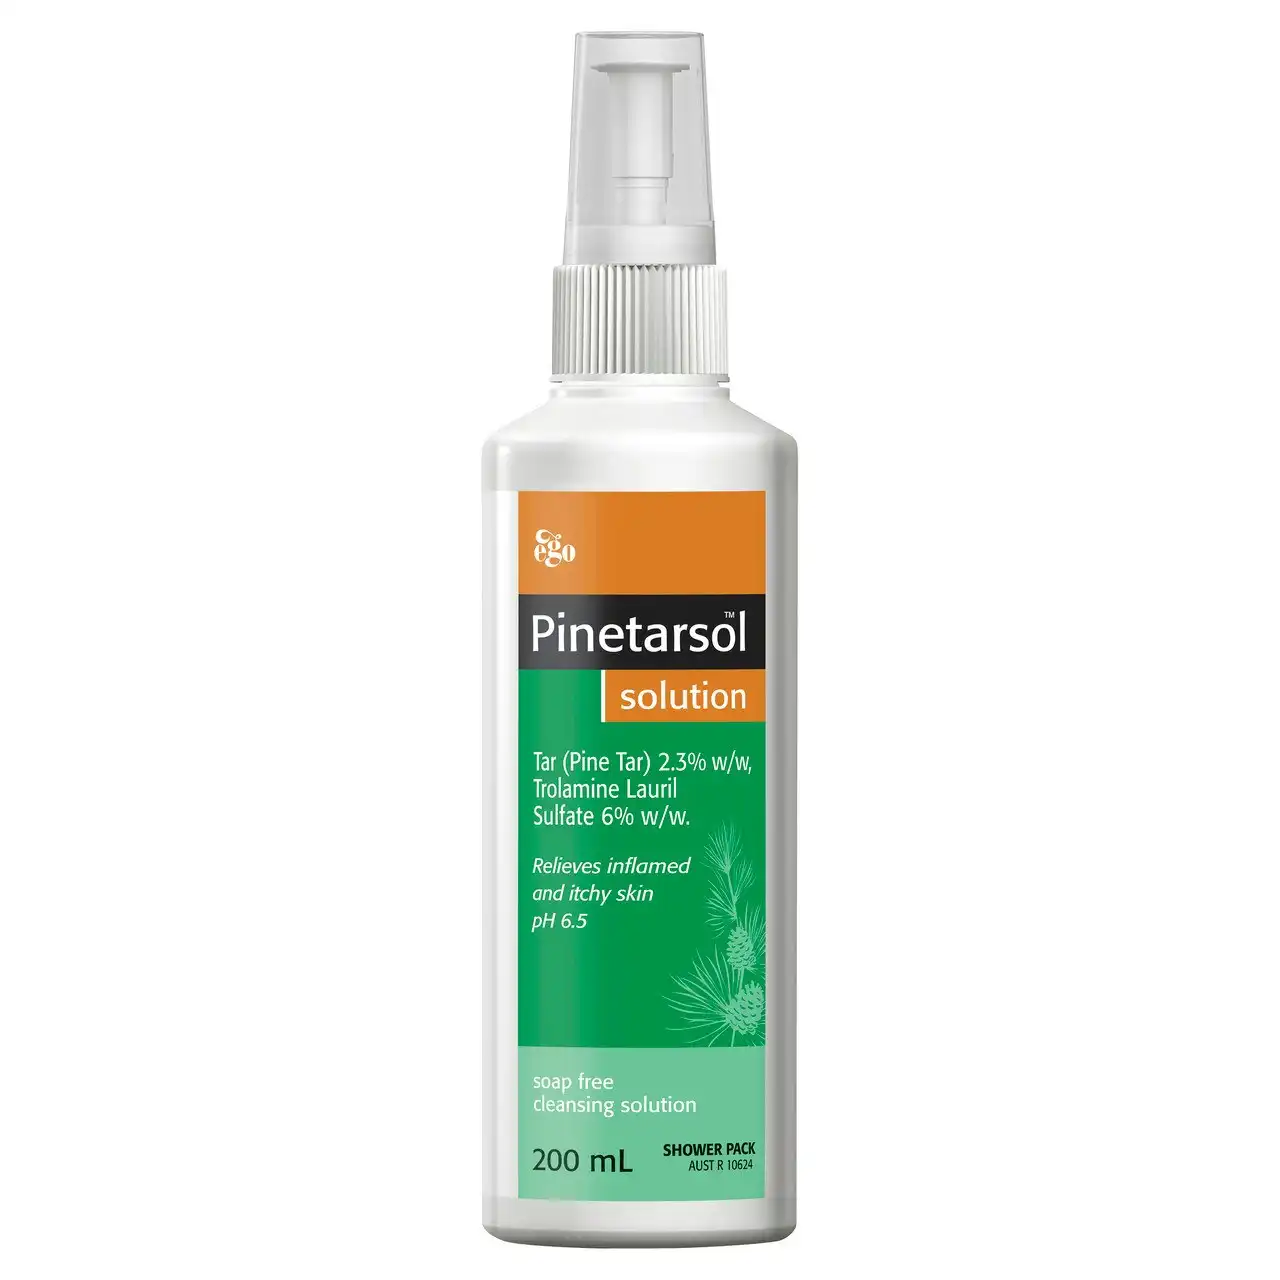 Pinetarsol Solution - Shower Pack 200ml